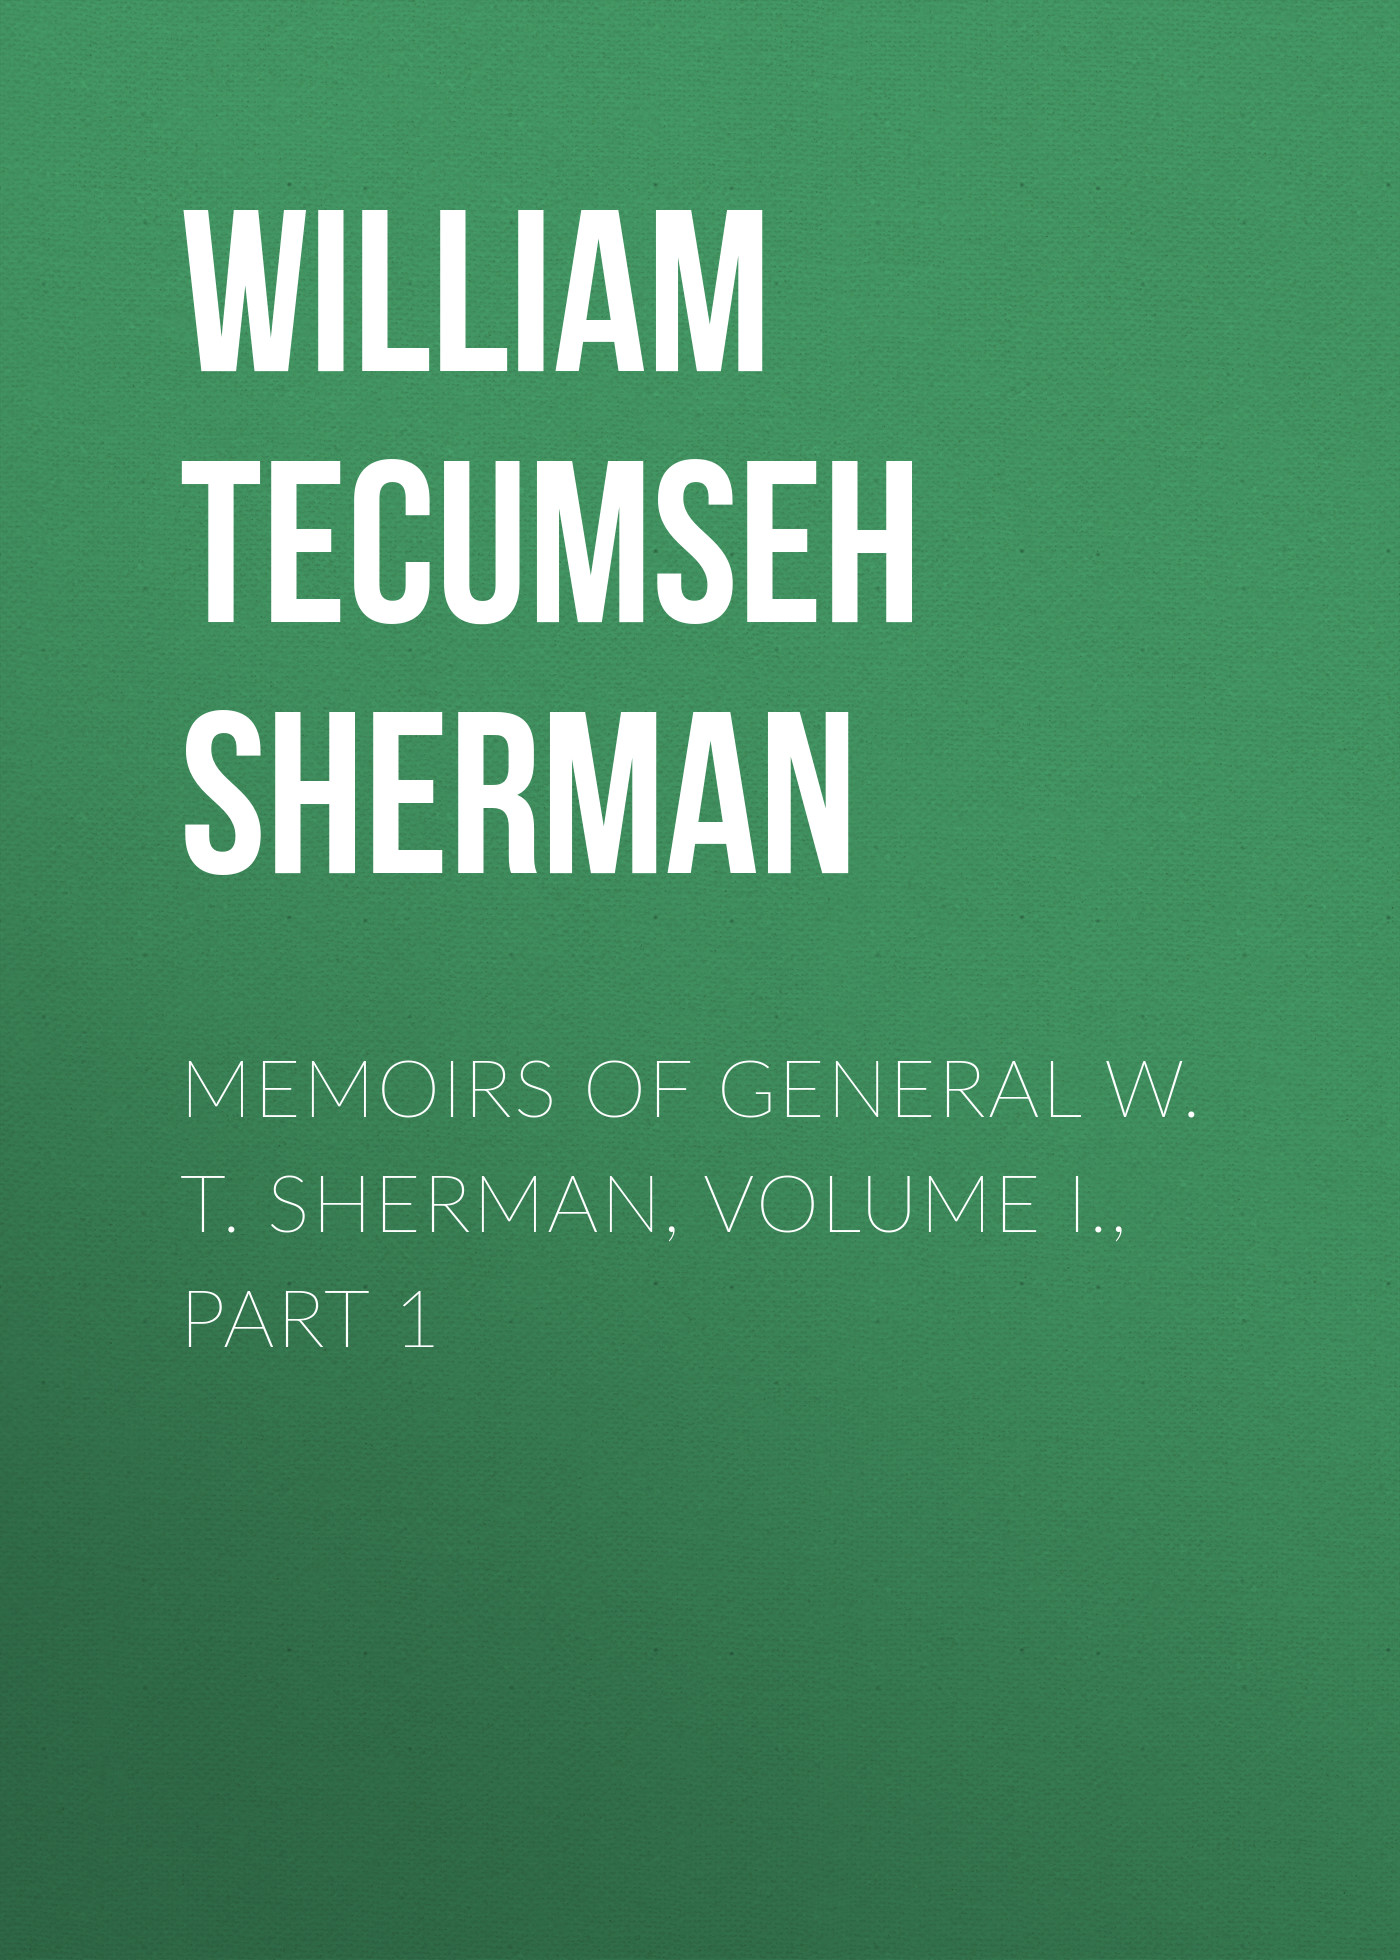 Книга Memoirs of General W. T. Sherman, Volume I., Part 1 из серии , созданная William Tecumseh Sherman, может относится к жанру Биографии и Мемуары, История, Зарубежная образовательная литература, Зарубежная старинная литература, Зарубежная классика. Стоимость электронной книги Memoirs of General W. T. Sherman, Volume I., Part 1 с идентификатором 35006825 составляет 0 руб.